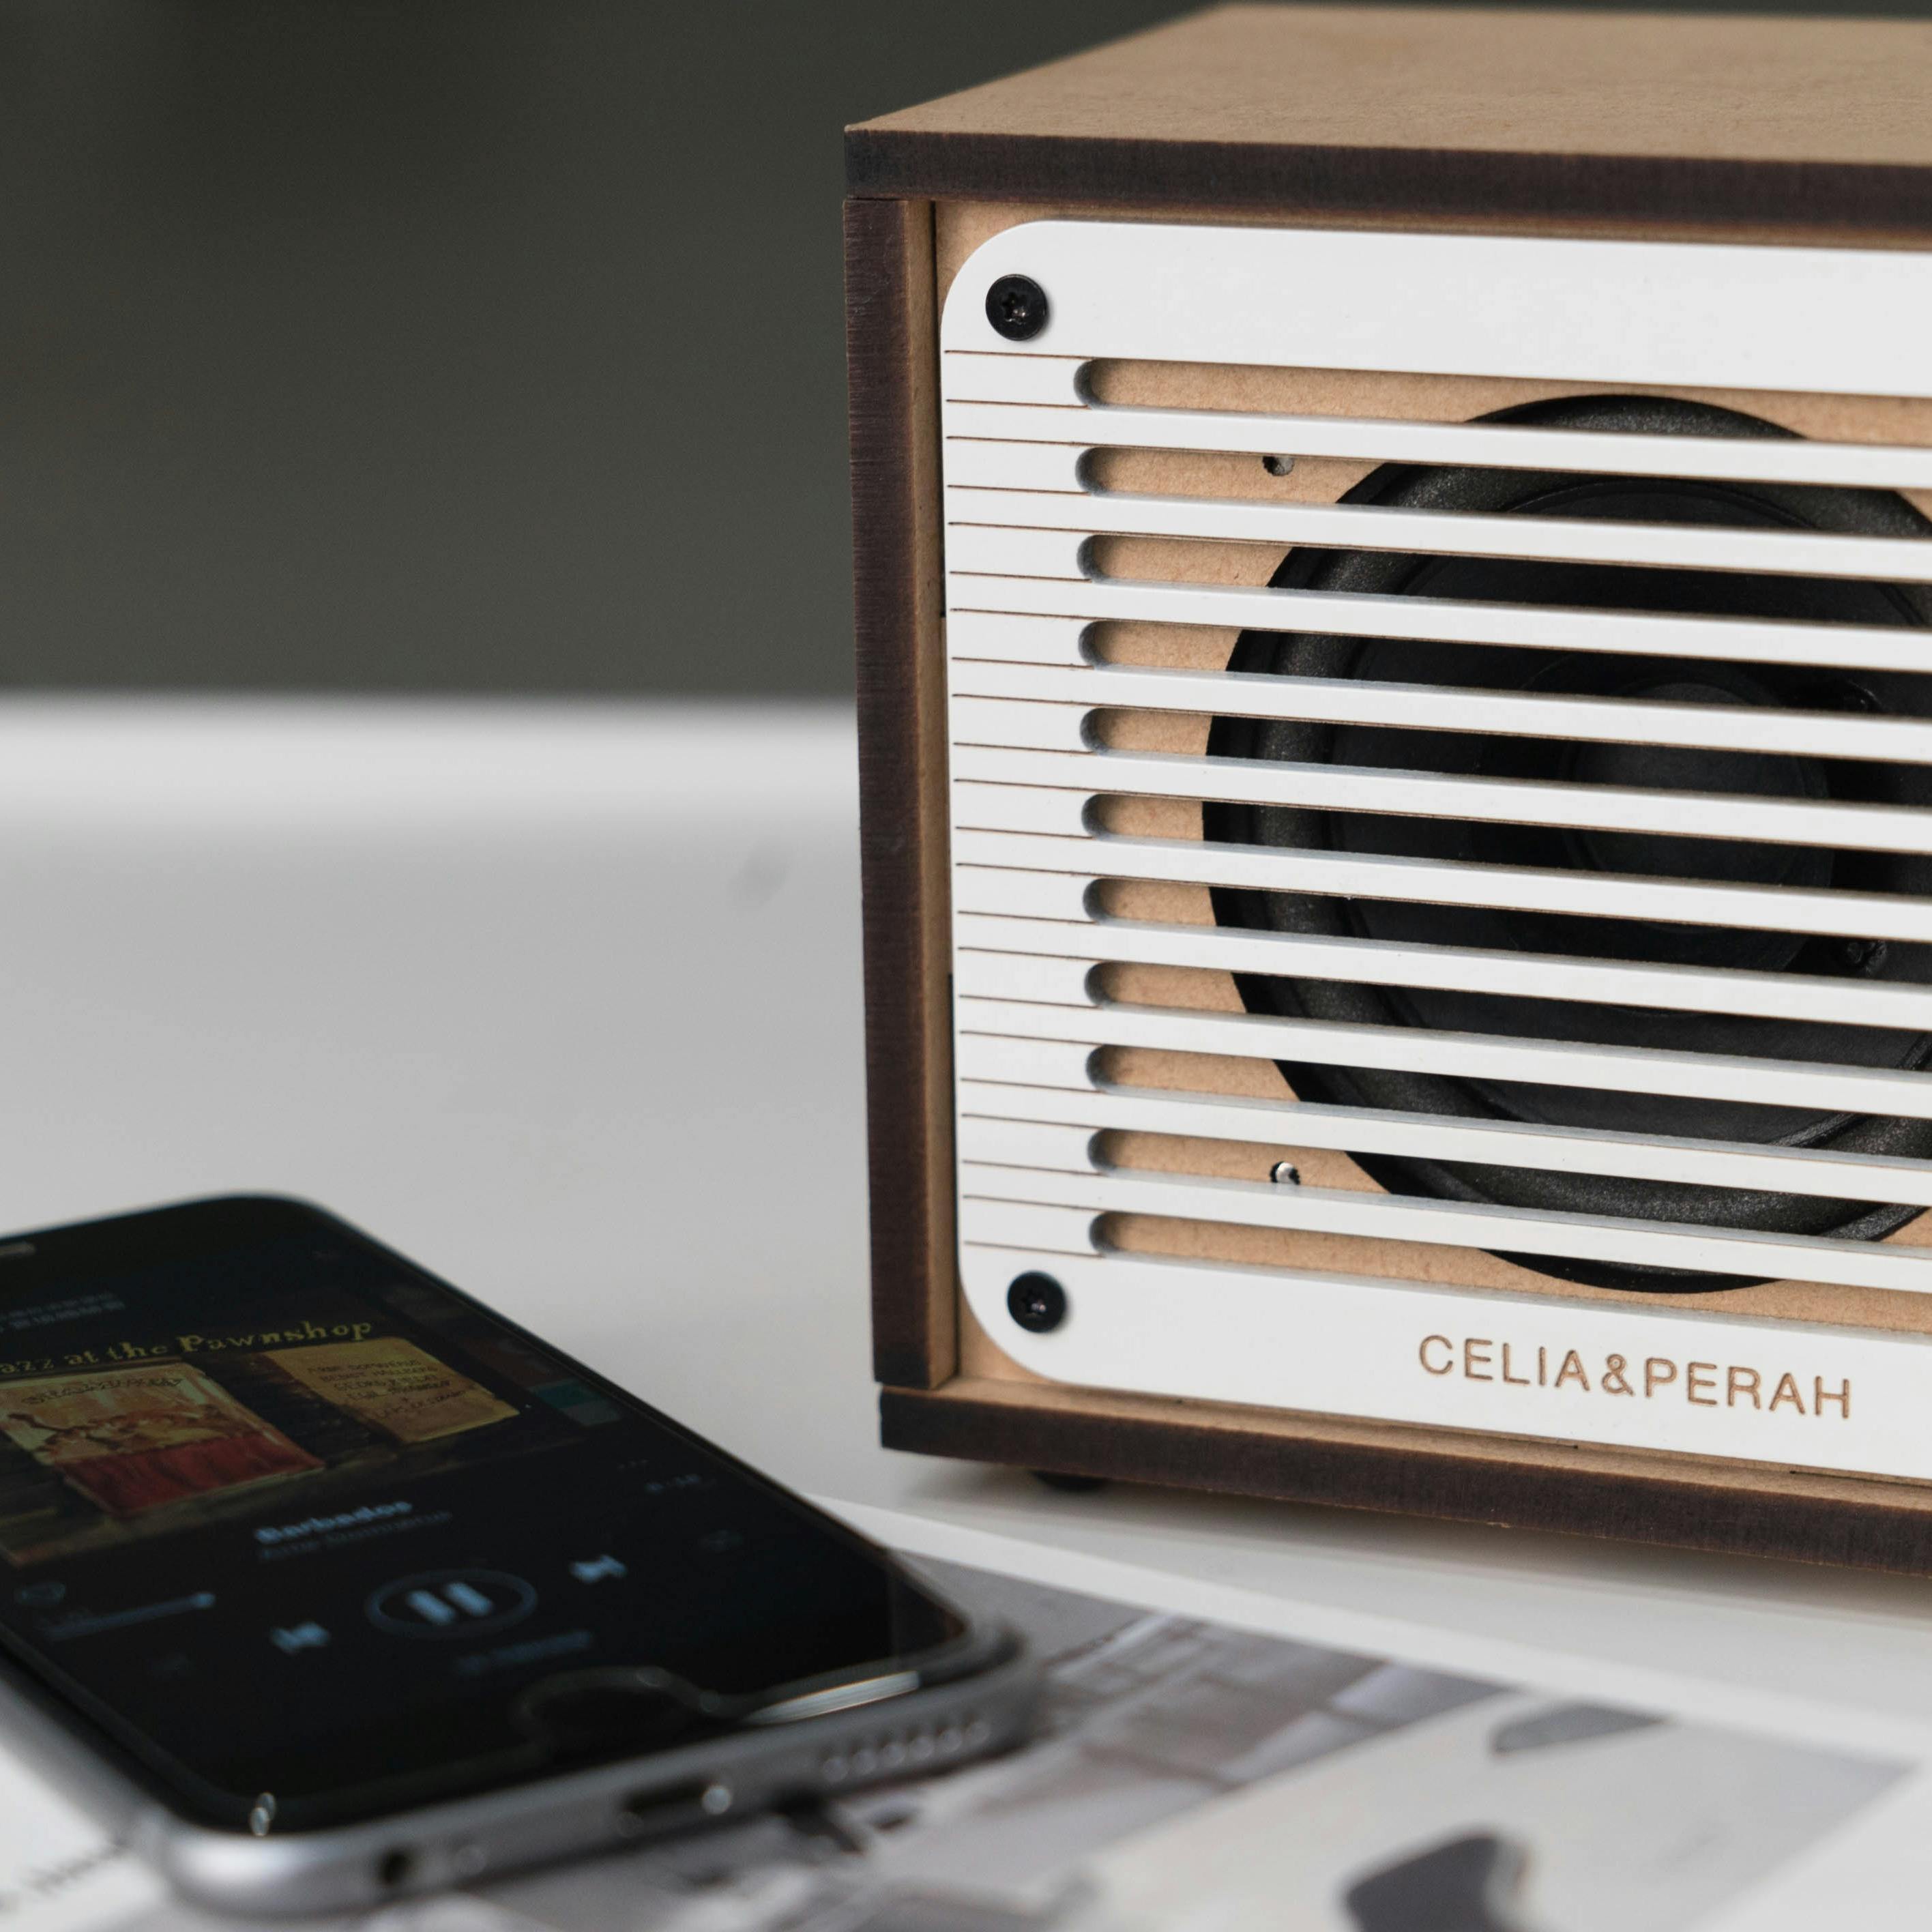 Celia & Perah DIY Bluetooth Classic Radio